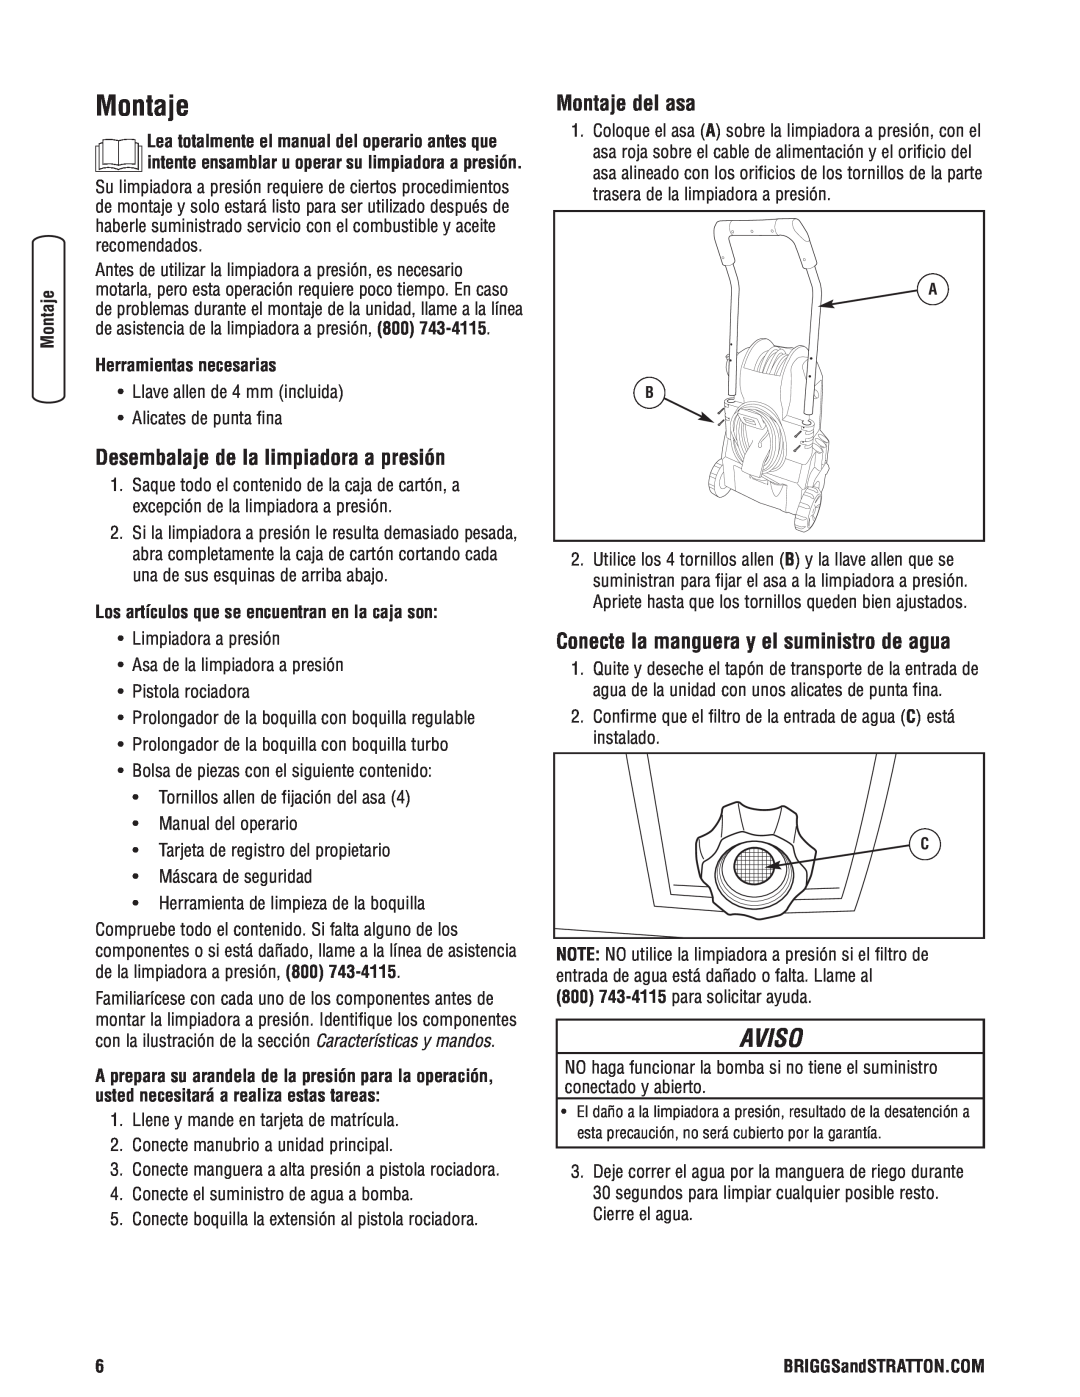 Briggs & Stratton Electric Pressure Washer manual Desembalaje de la limpiadora a presión, Montaje del asa, Aviso 